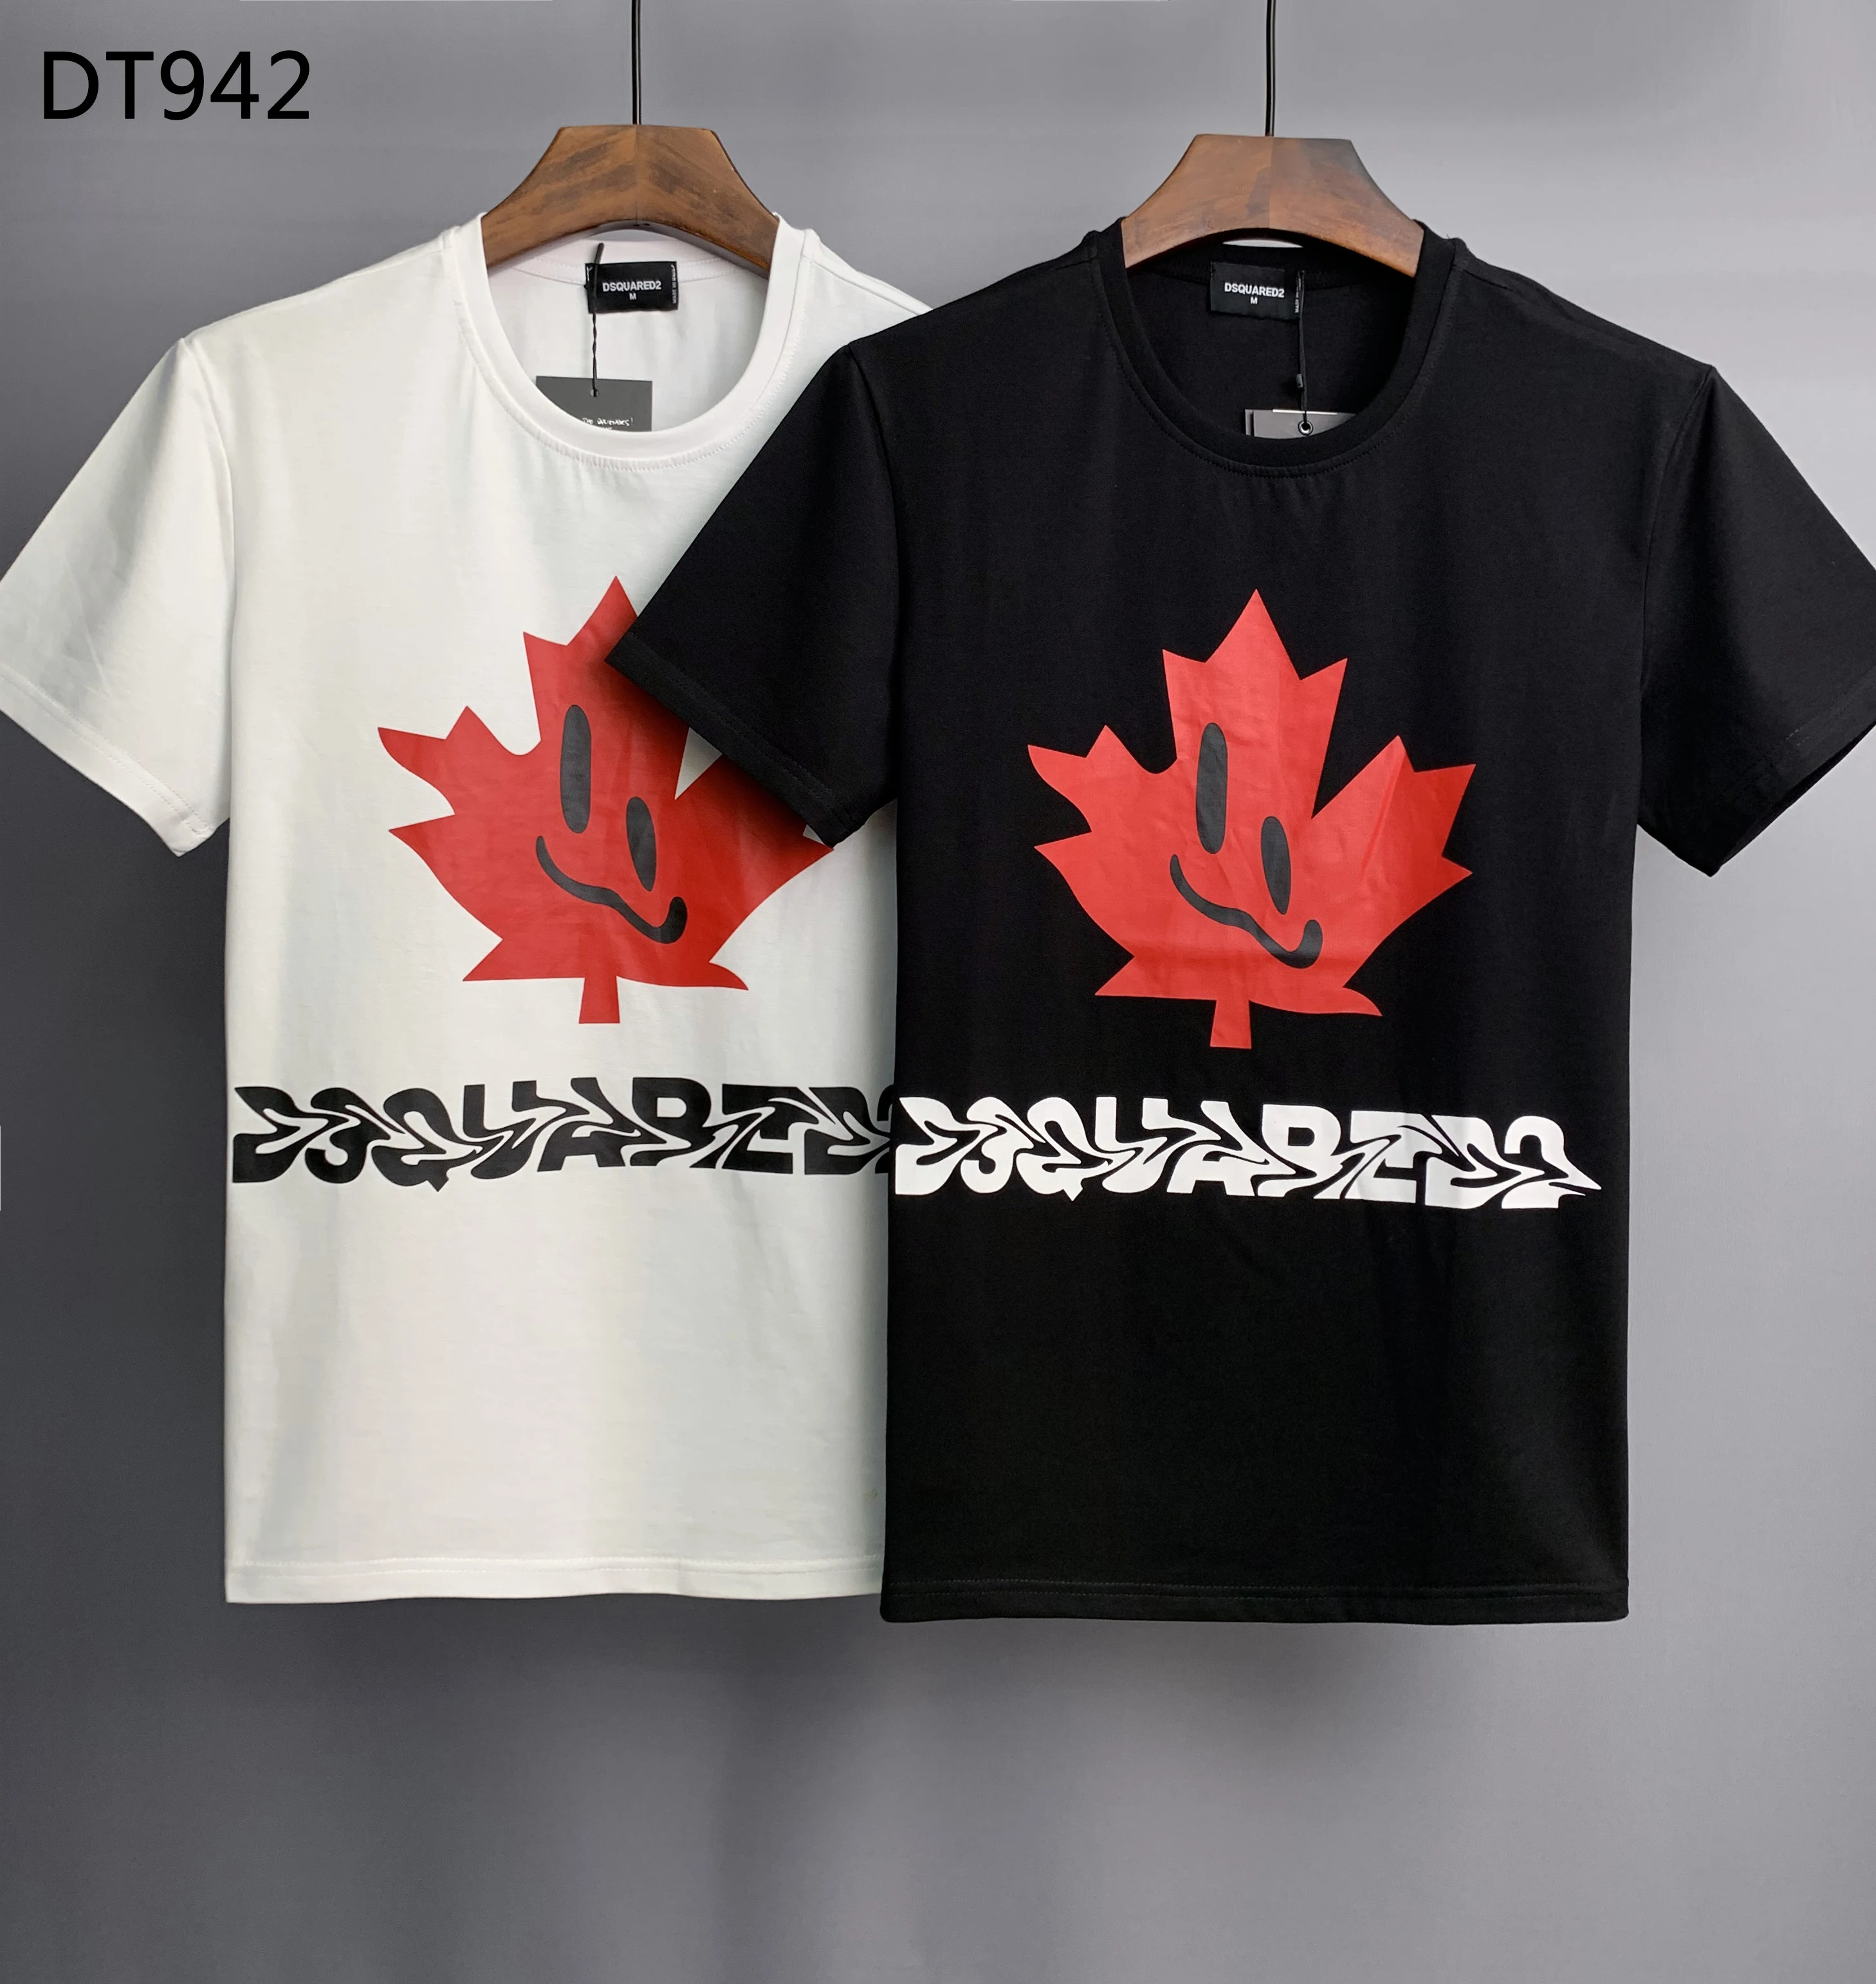 

Dsquared2 Maple Leaf Men Women Lovers Couple Fashion Cotton Dsq2 Short Sleeve D2 Round Neck T Shirt Boyfriend Gift T-Shirt DT942